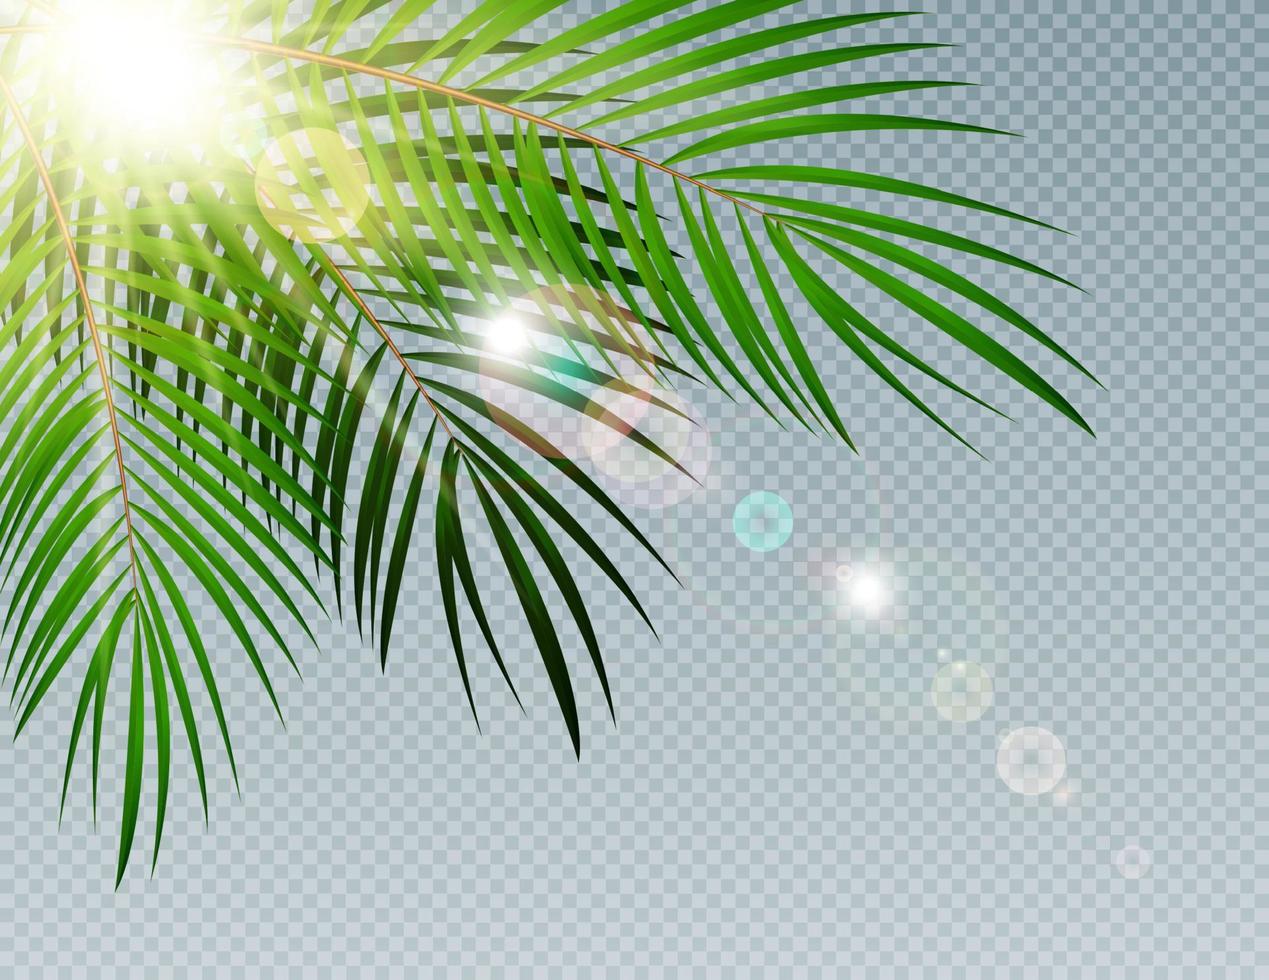 Sommerzeit-Palmenblatt mit Sonne verbrannt auf transparenter Vektor-Hintergrundillustration vektor